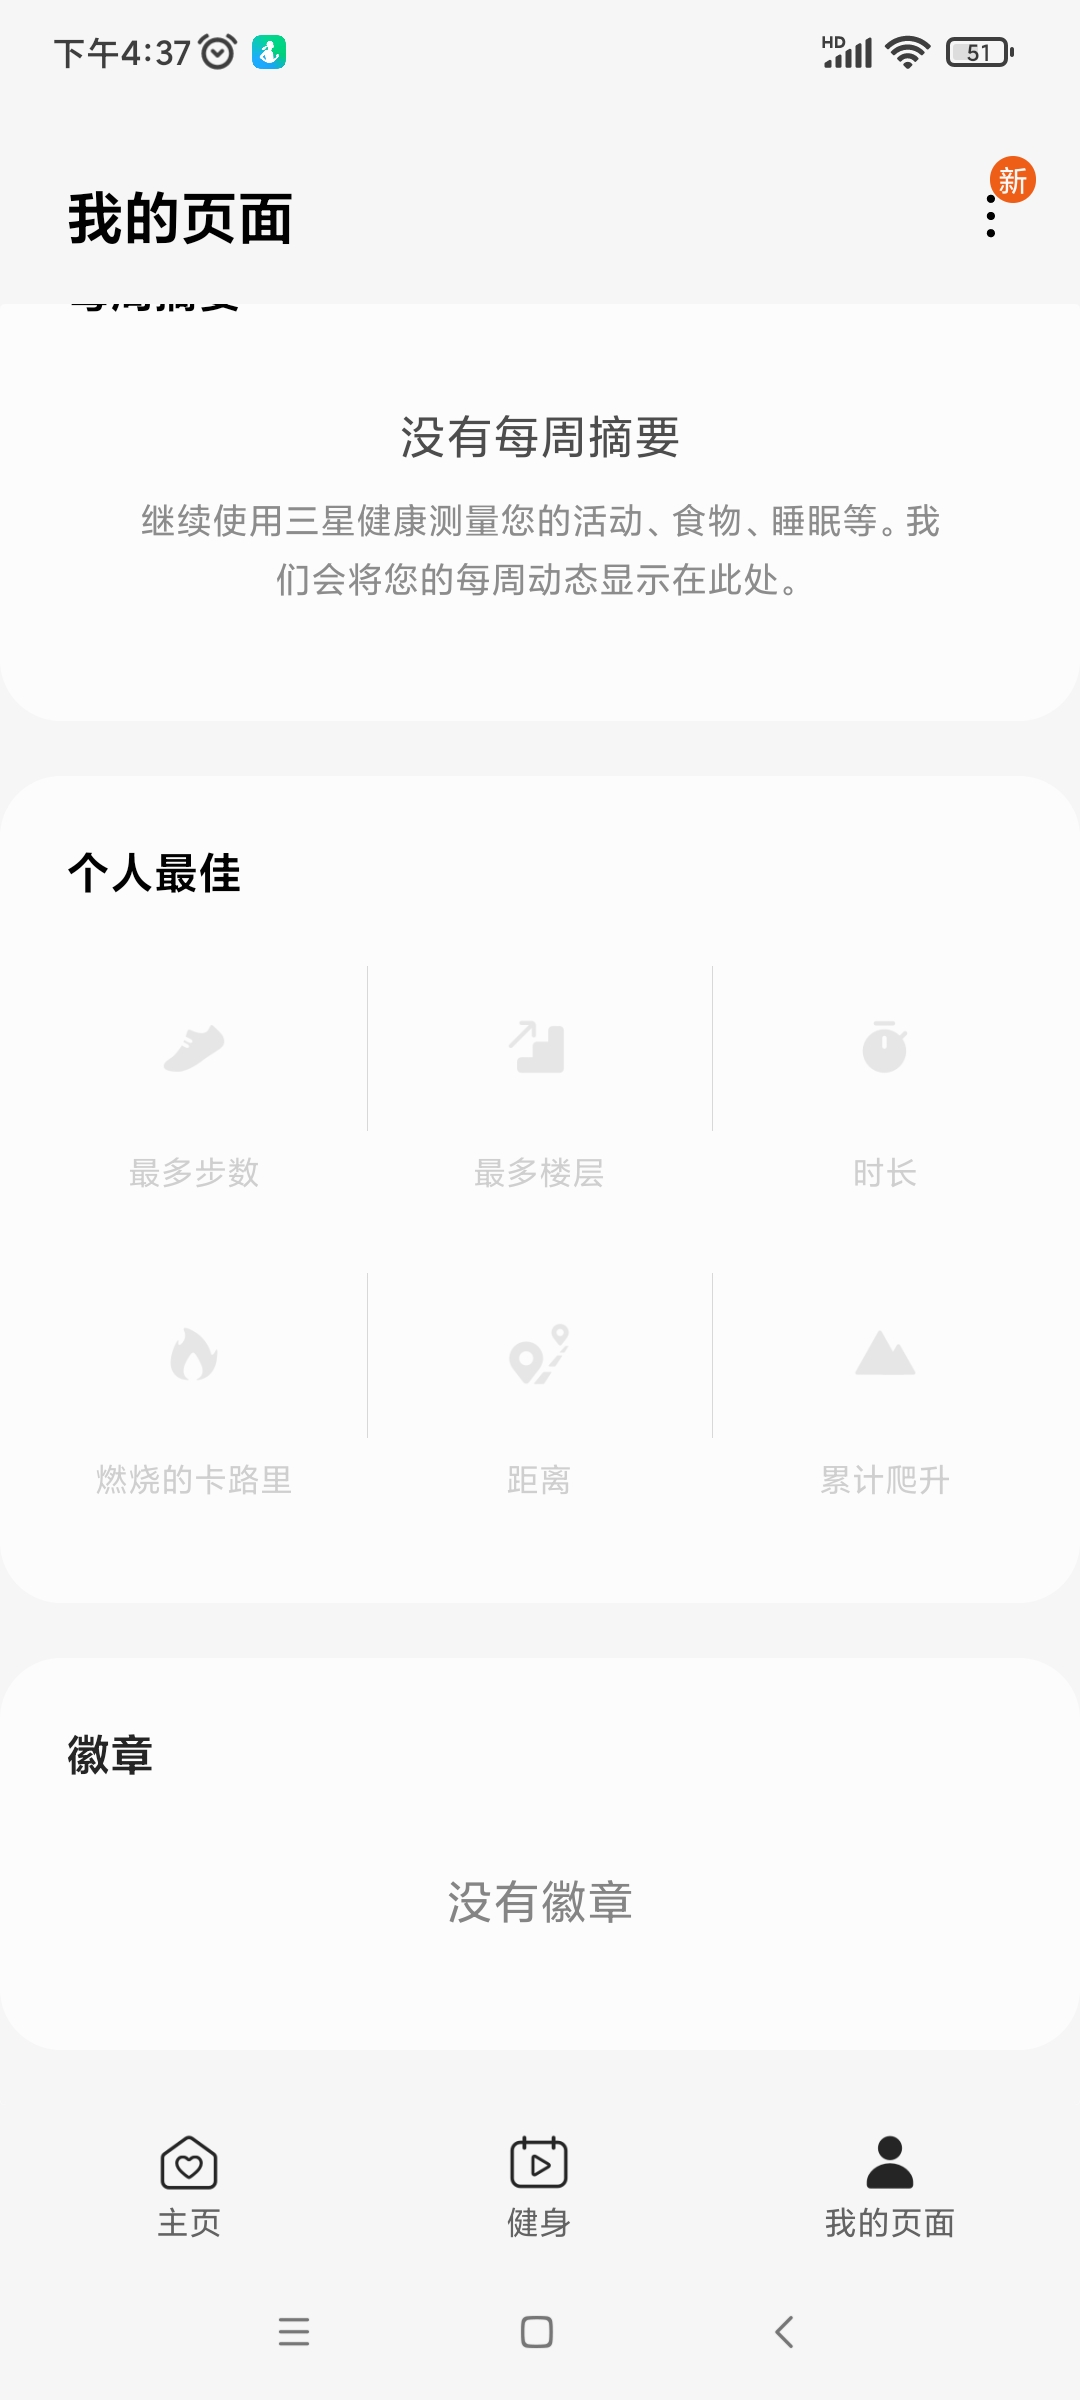 三星健康app(samsung health)